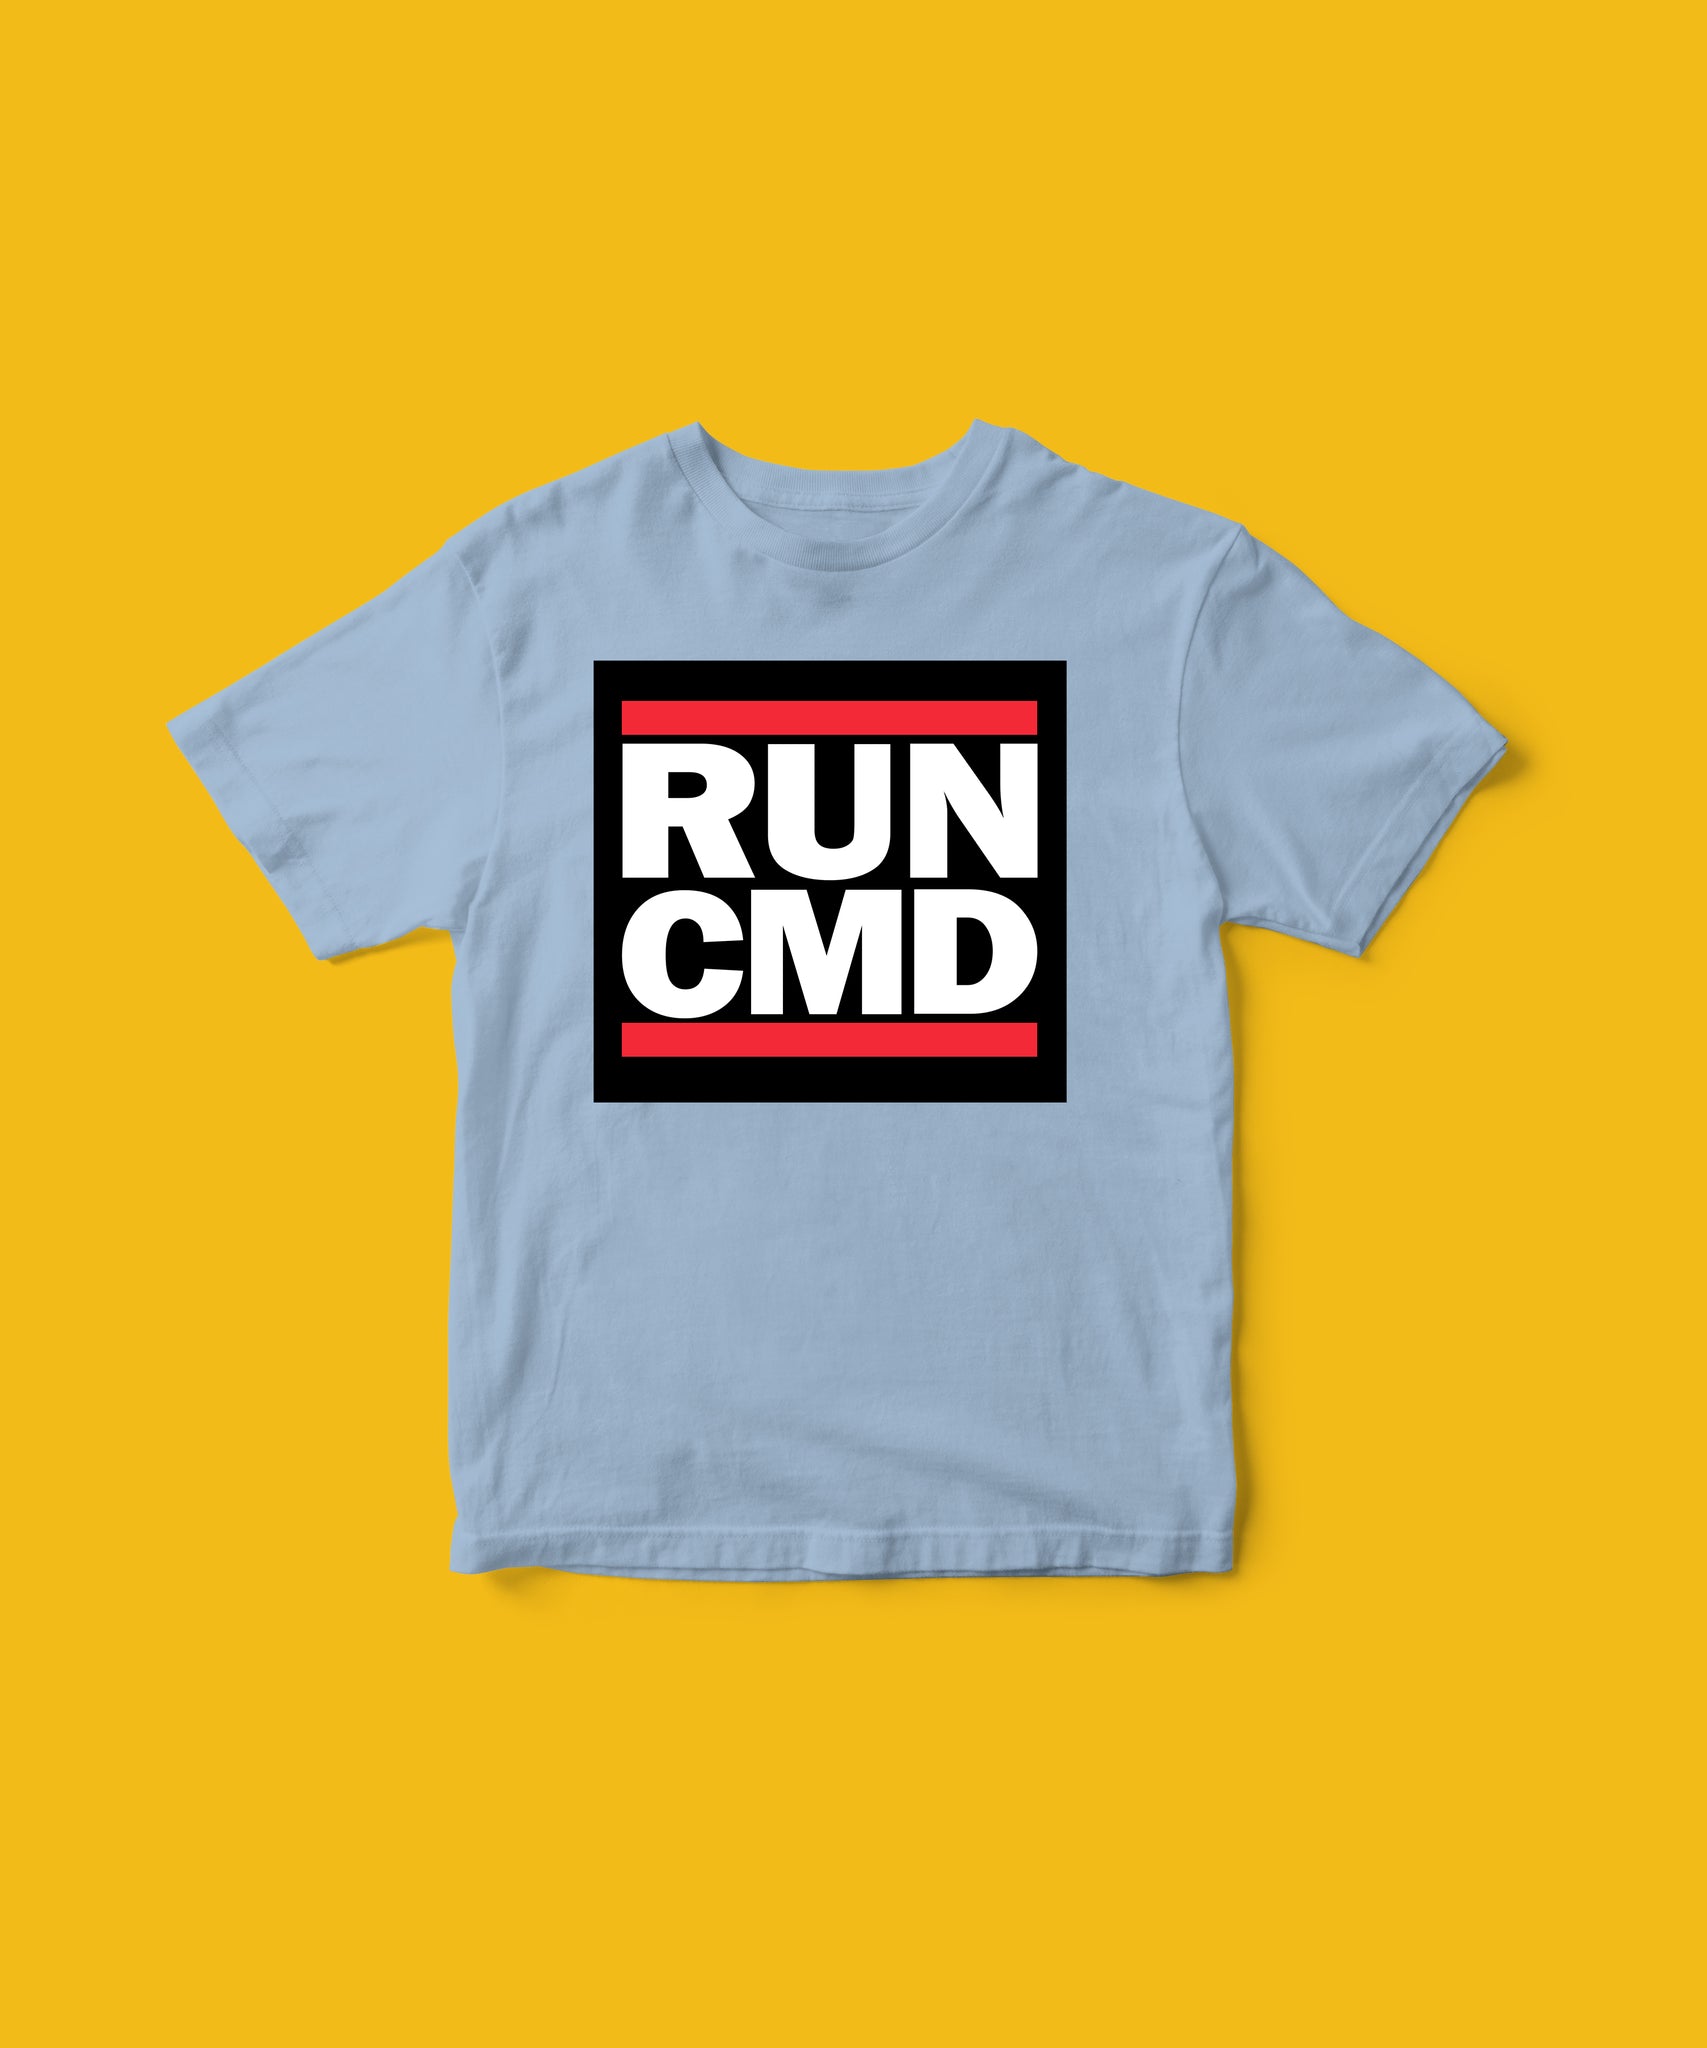 Run CMD tee